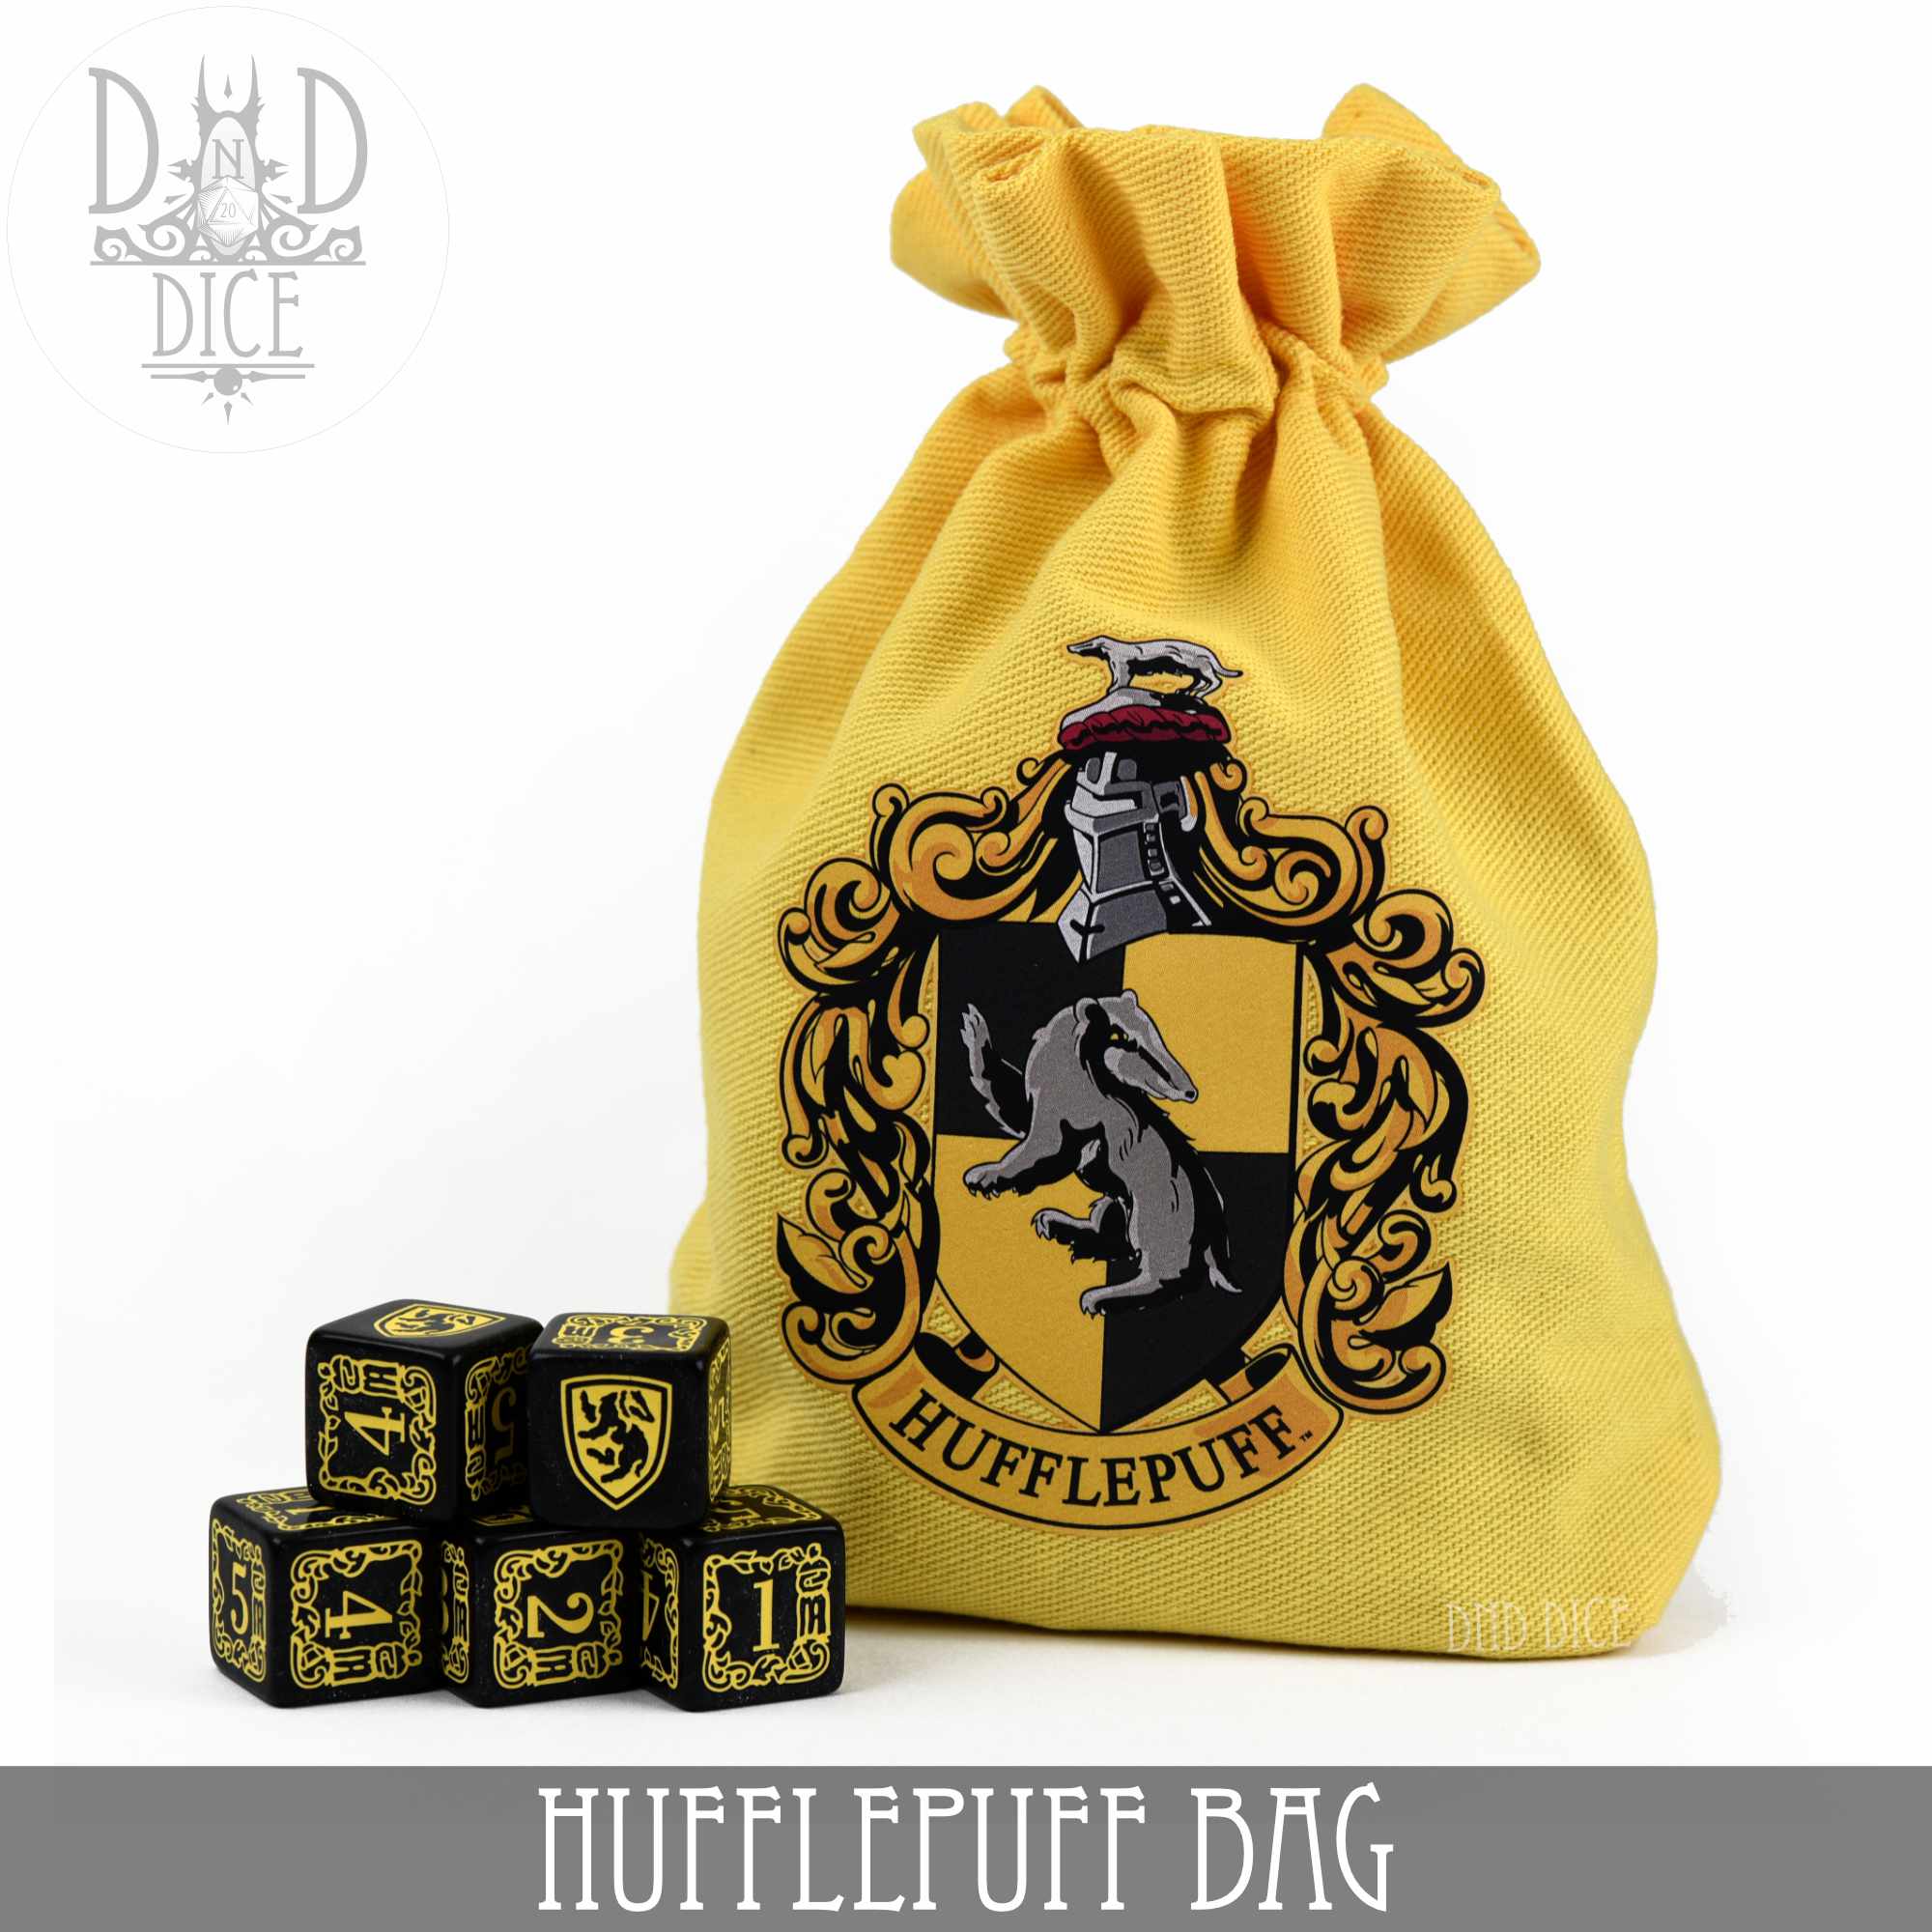 Harry Potter Hufflepuff Dice Bag & 5D6